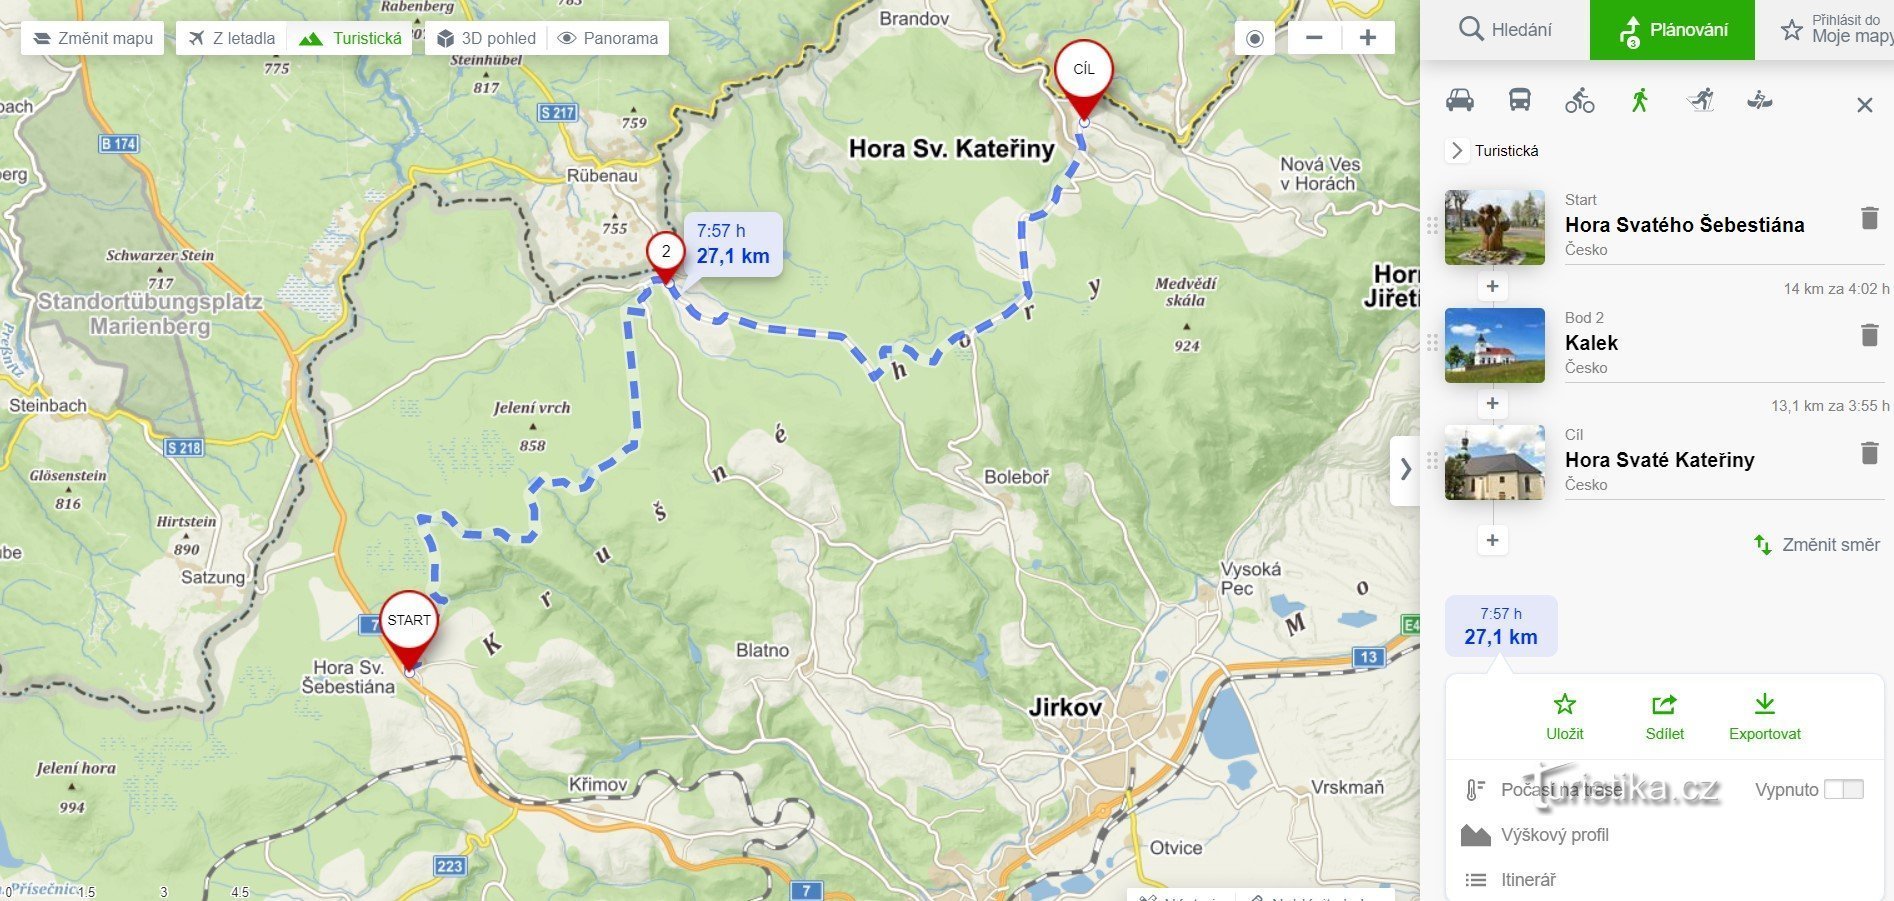 Rătăcire prin Munții Metalici - Muntele Sf. Sebastian - Kalek - Muntele Sf. Ecaterina - etapa a 7-a